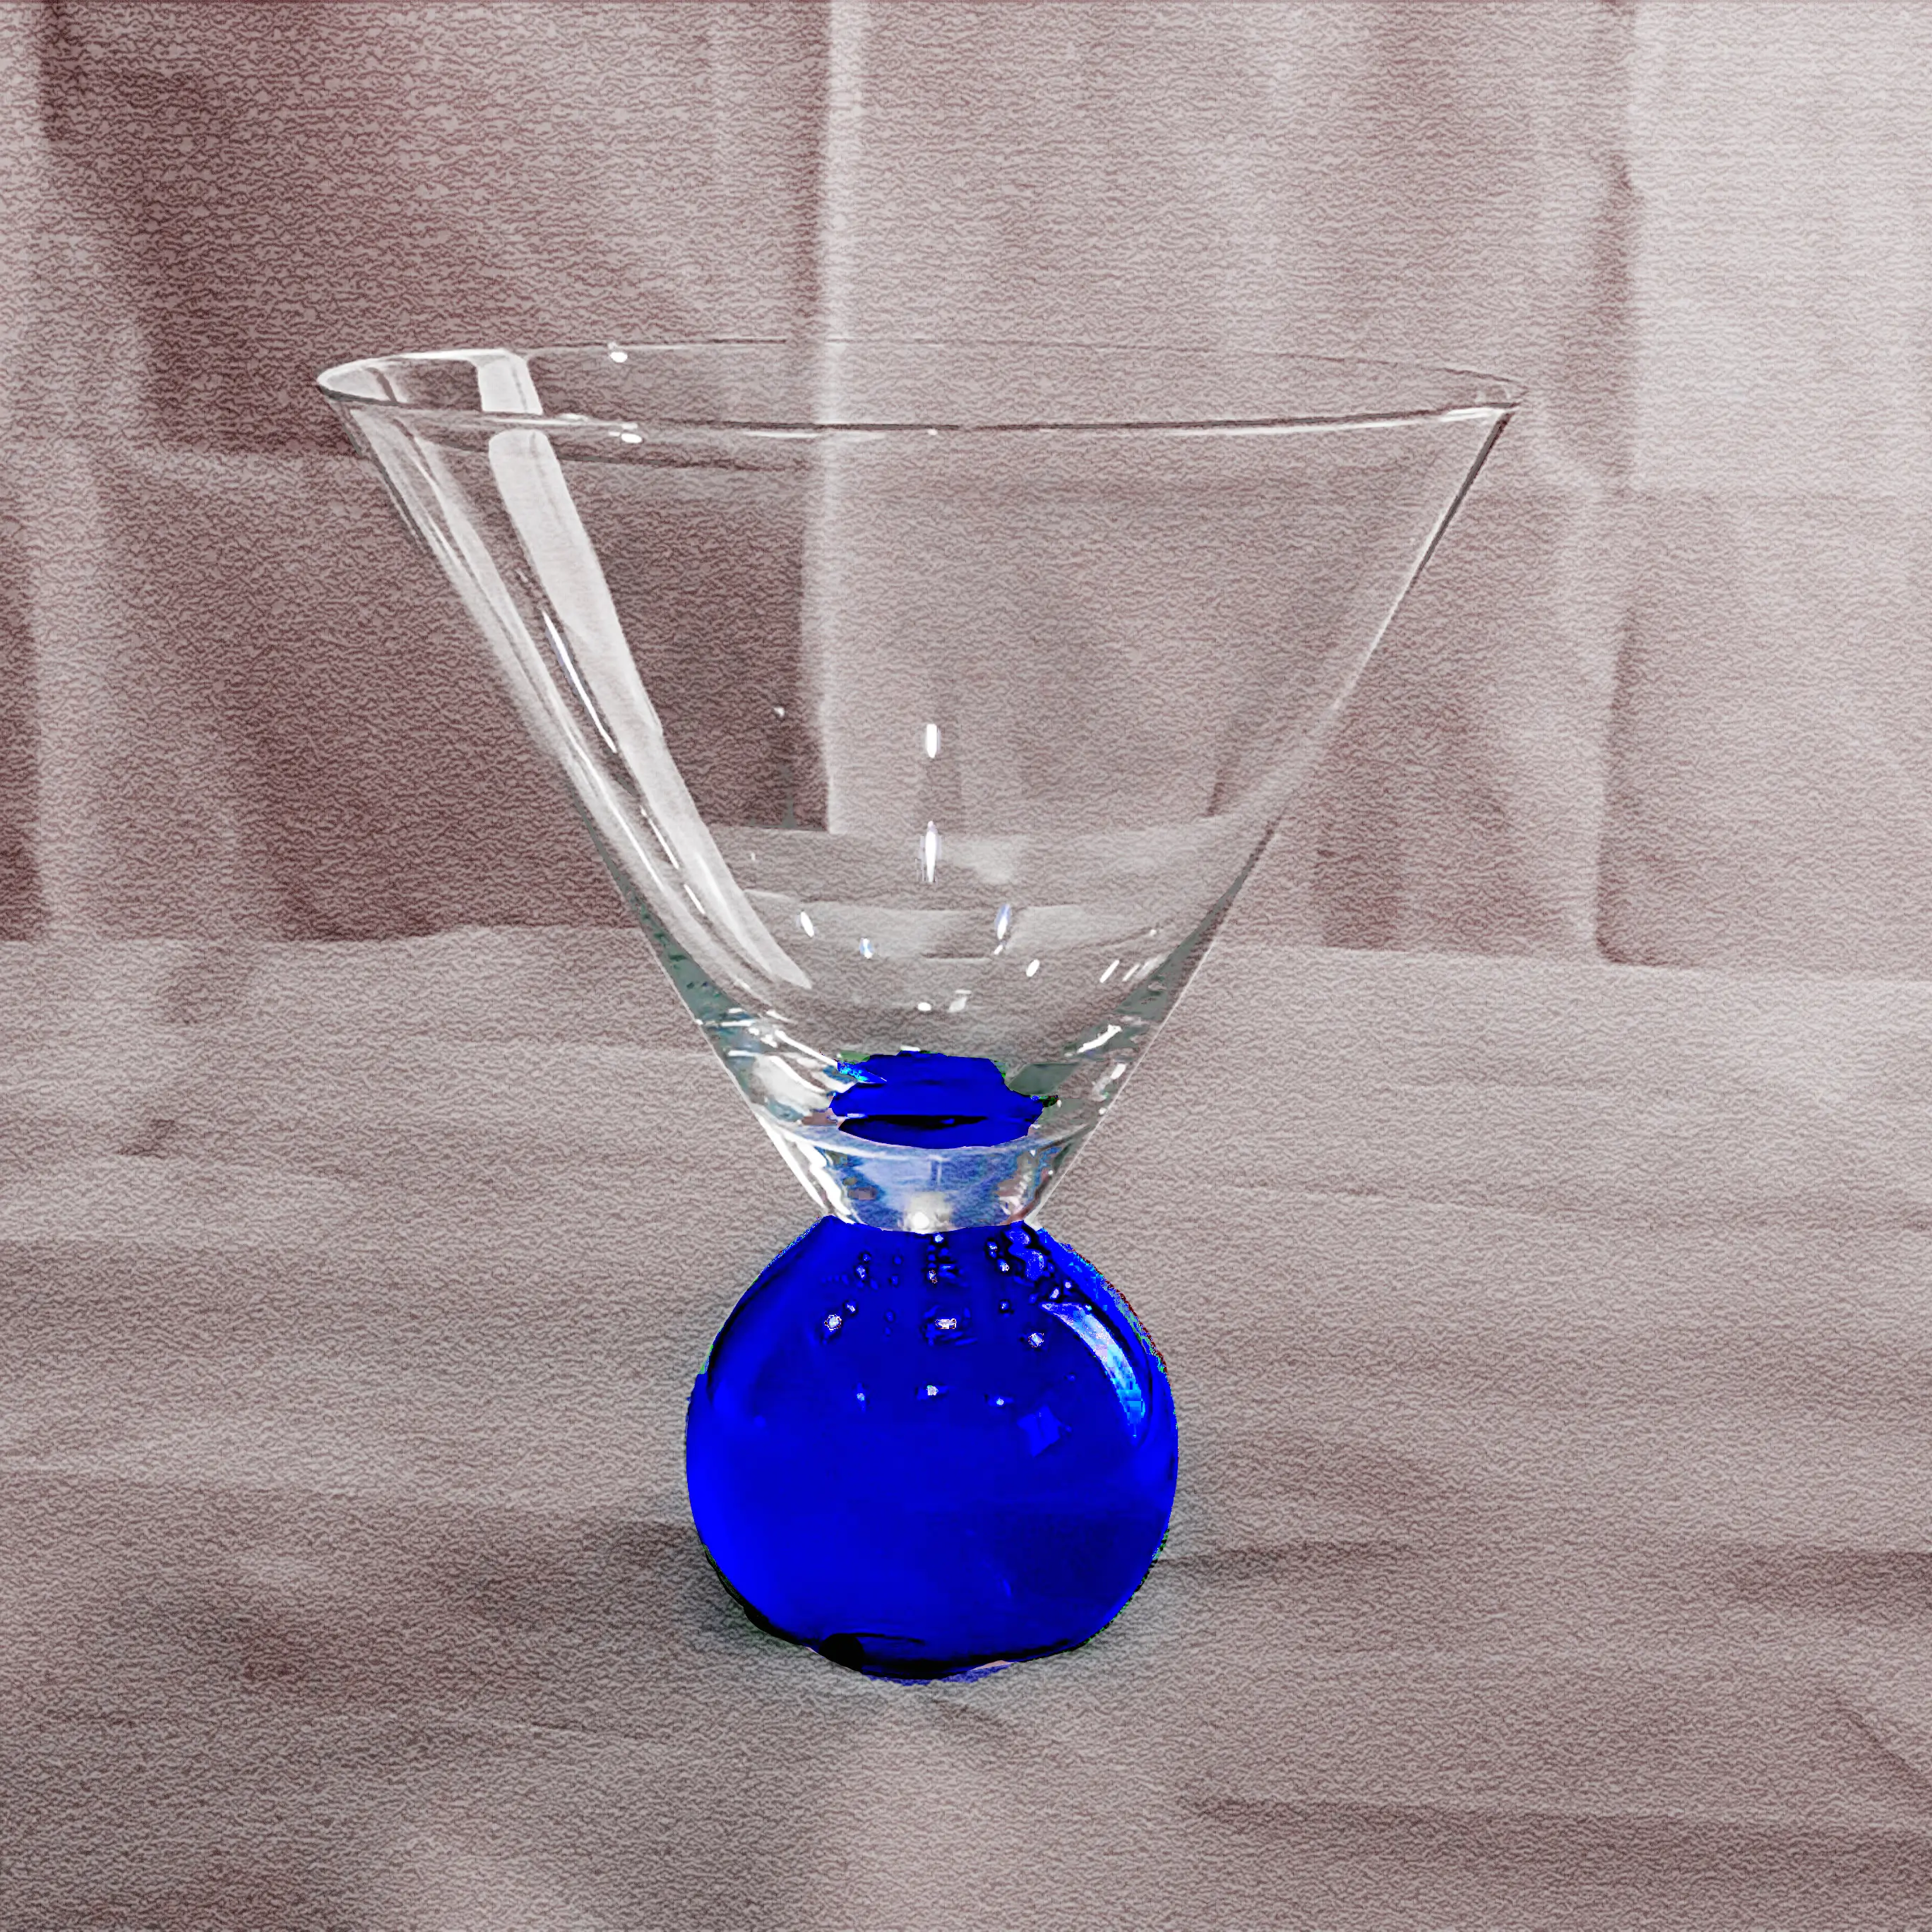 Gelas Cocktail dasar bola berwarna biru kustom Martini tanpa tangkai kaca minum Bar pesta Martini dengan bagian bawah Malling